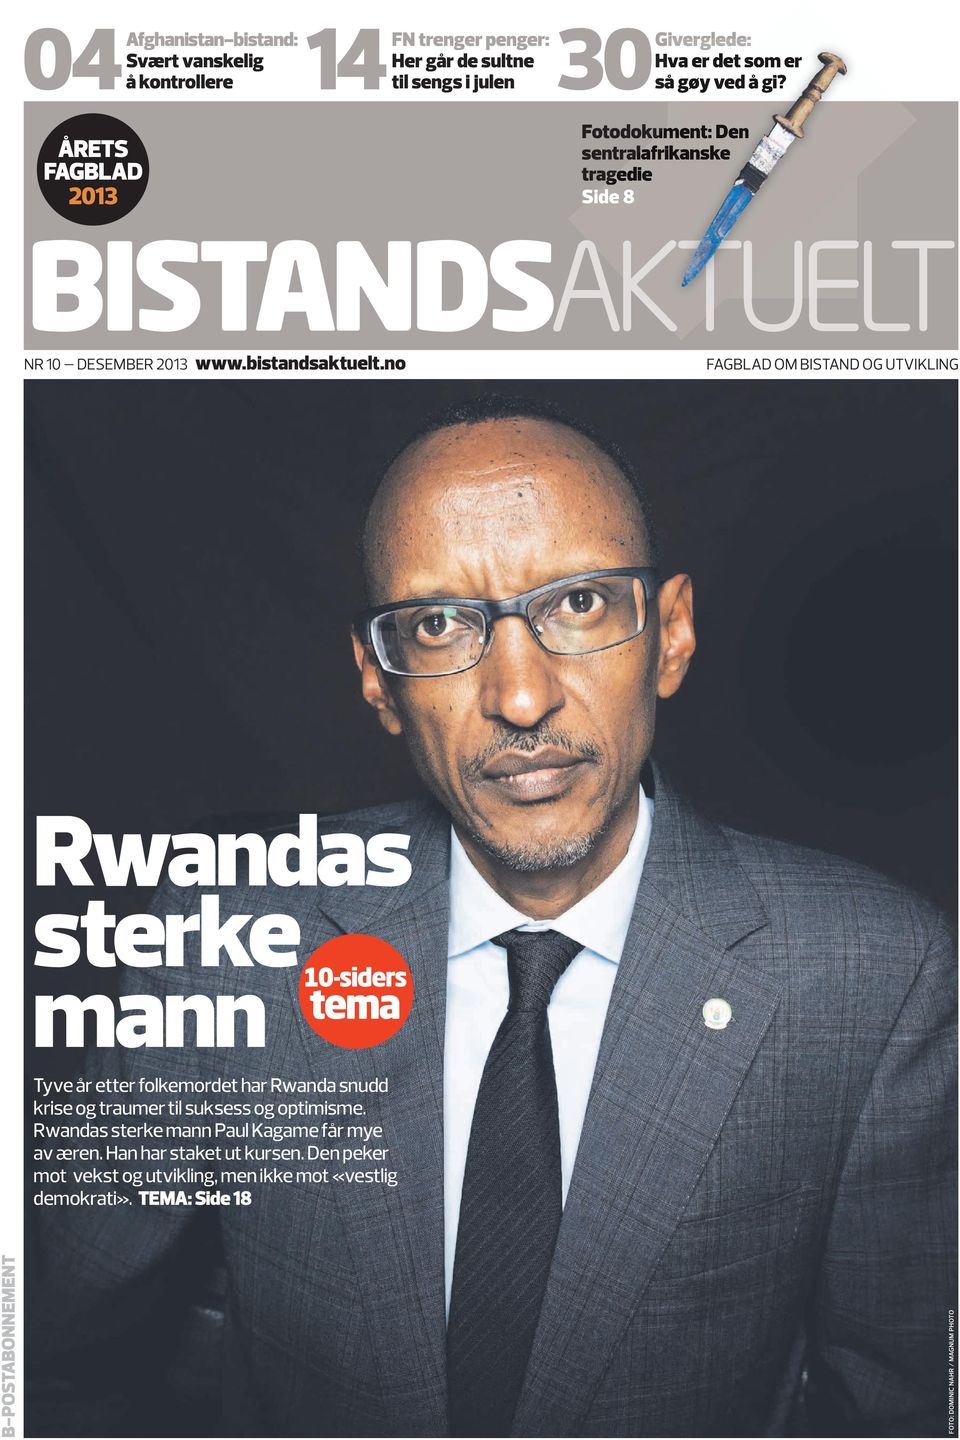 no FAGbLAd Om bistand OG UTVIKLInG Rwandas sterke mann 10-siders tema Tyve år etter folkemordet har Rwanda snudd krise og traumer til suksess og optimisme.